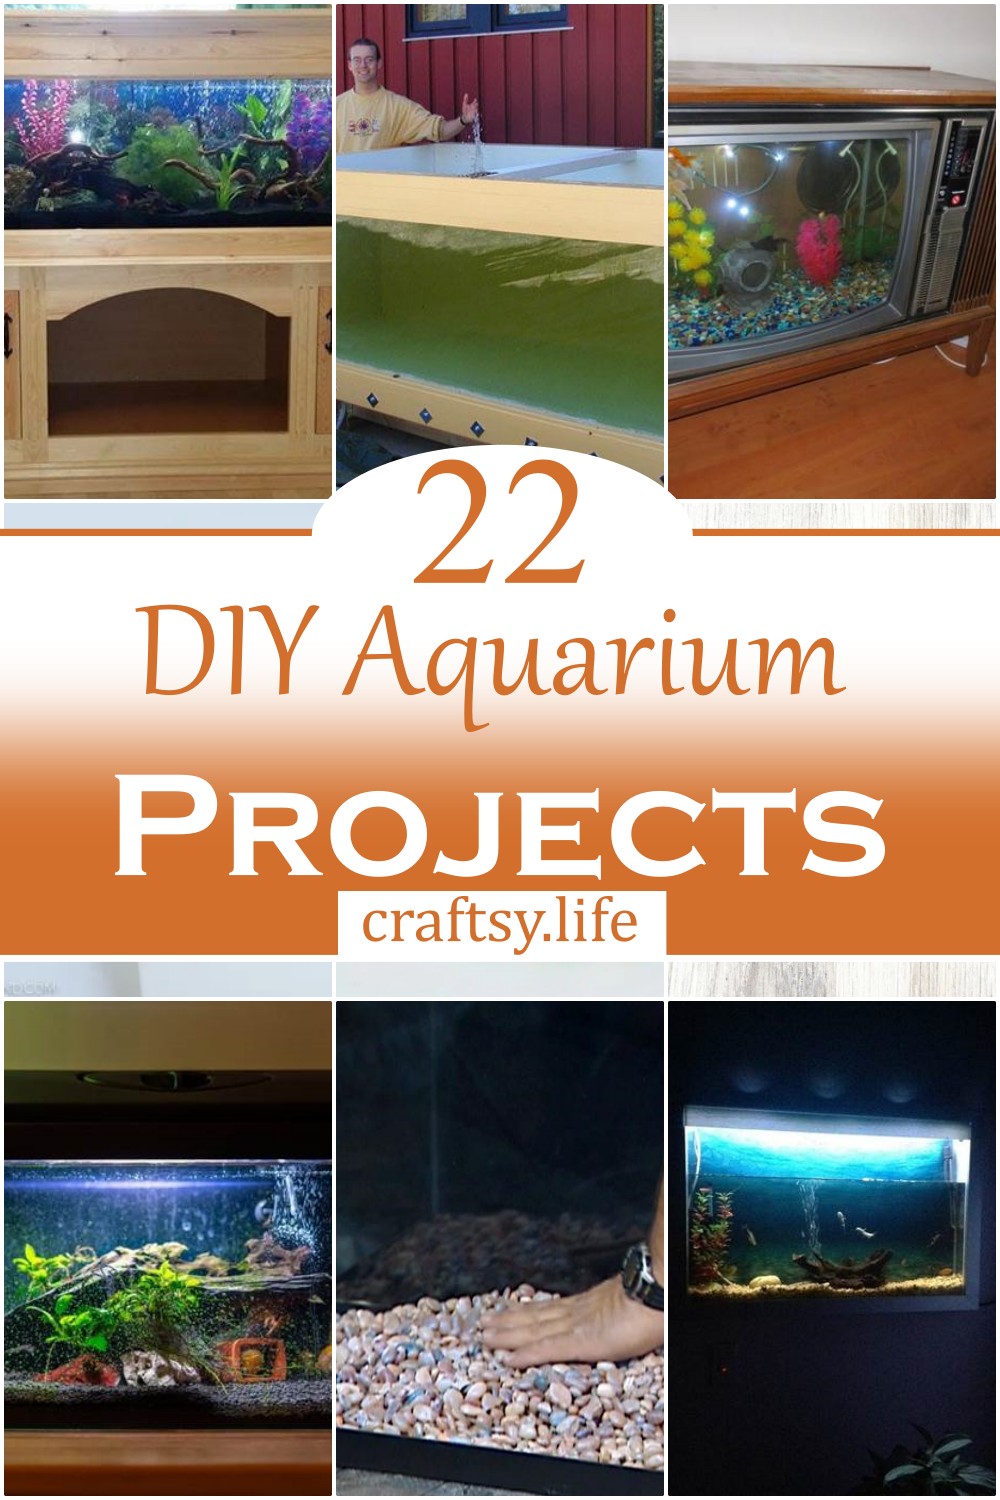 DIY Aquarium Projects